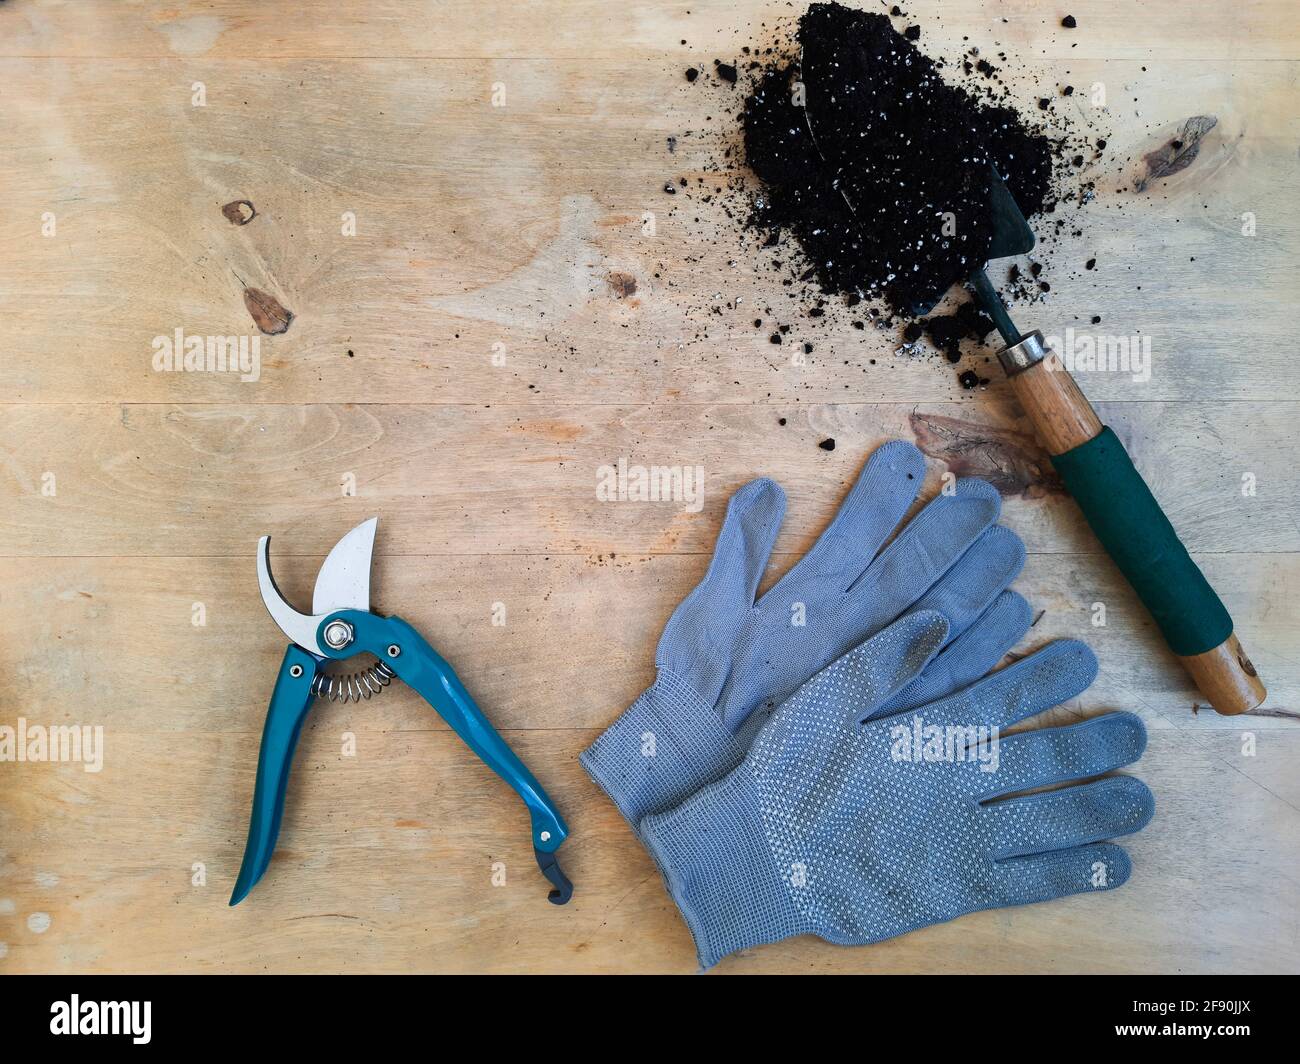 Gartenschere, Handschuhe, Kelle mit Erde auf einem Holztisch, Draufsicht Stockfoto